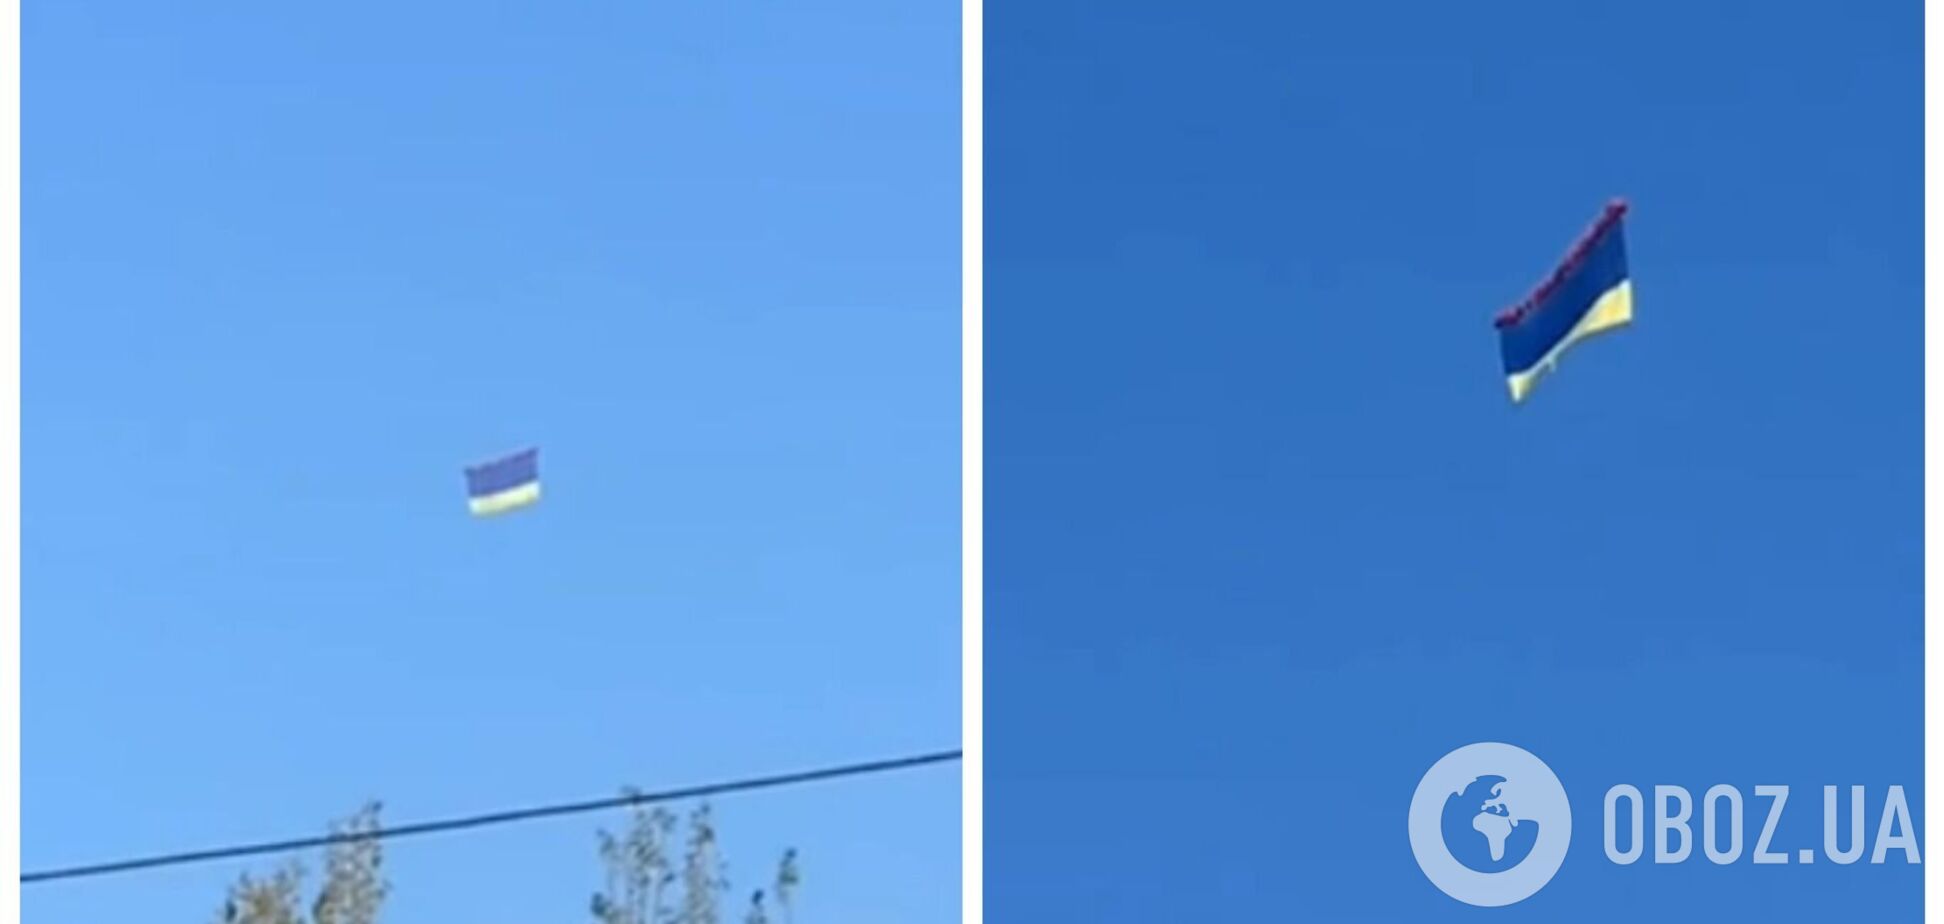 У небі над окупованим Донецьком замайорів прапор України: в місті чутно стрілянину